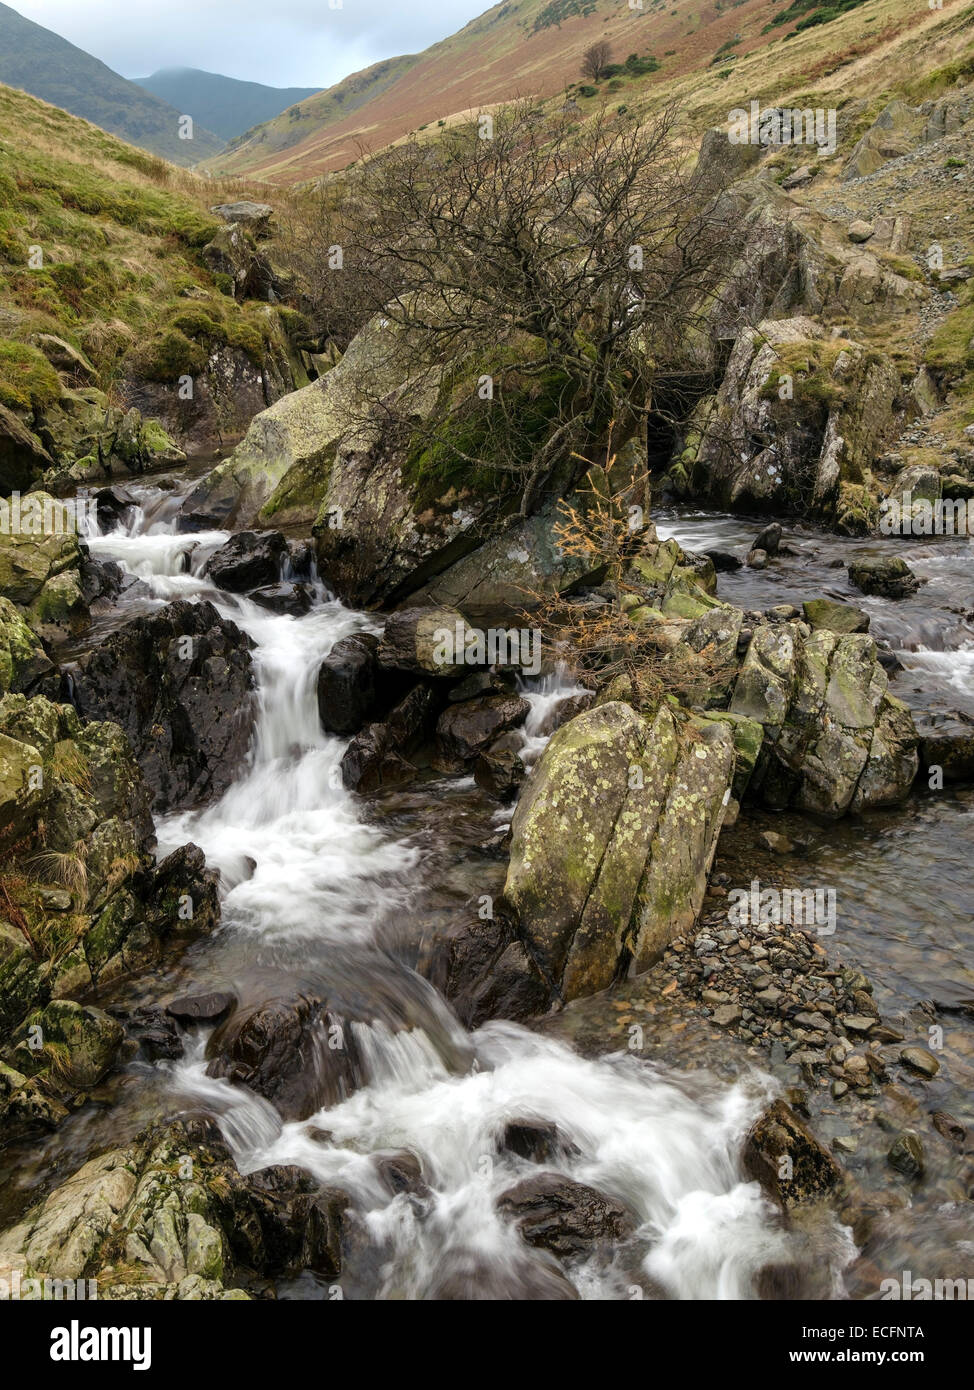 Cascades, Glenridding Beck ruisseau de montagne, Shap, Lake District, Cumbria, England, UK Banque D'Images